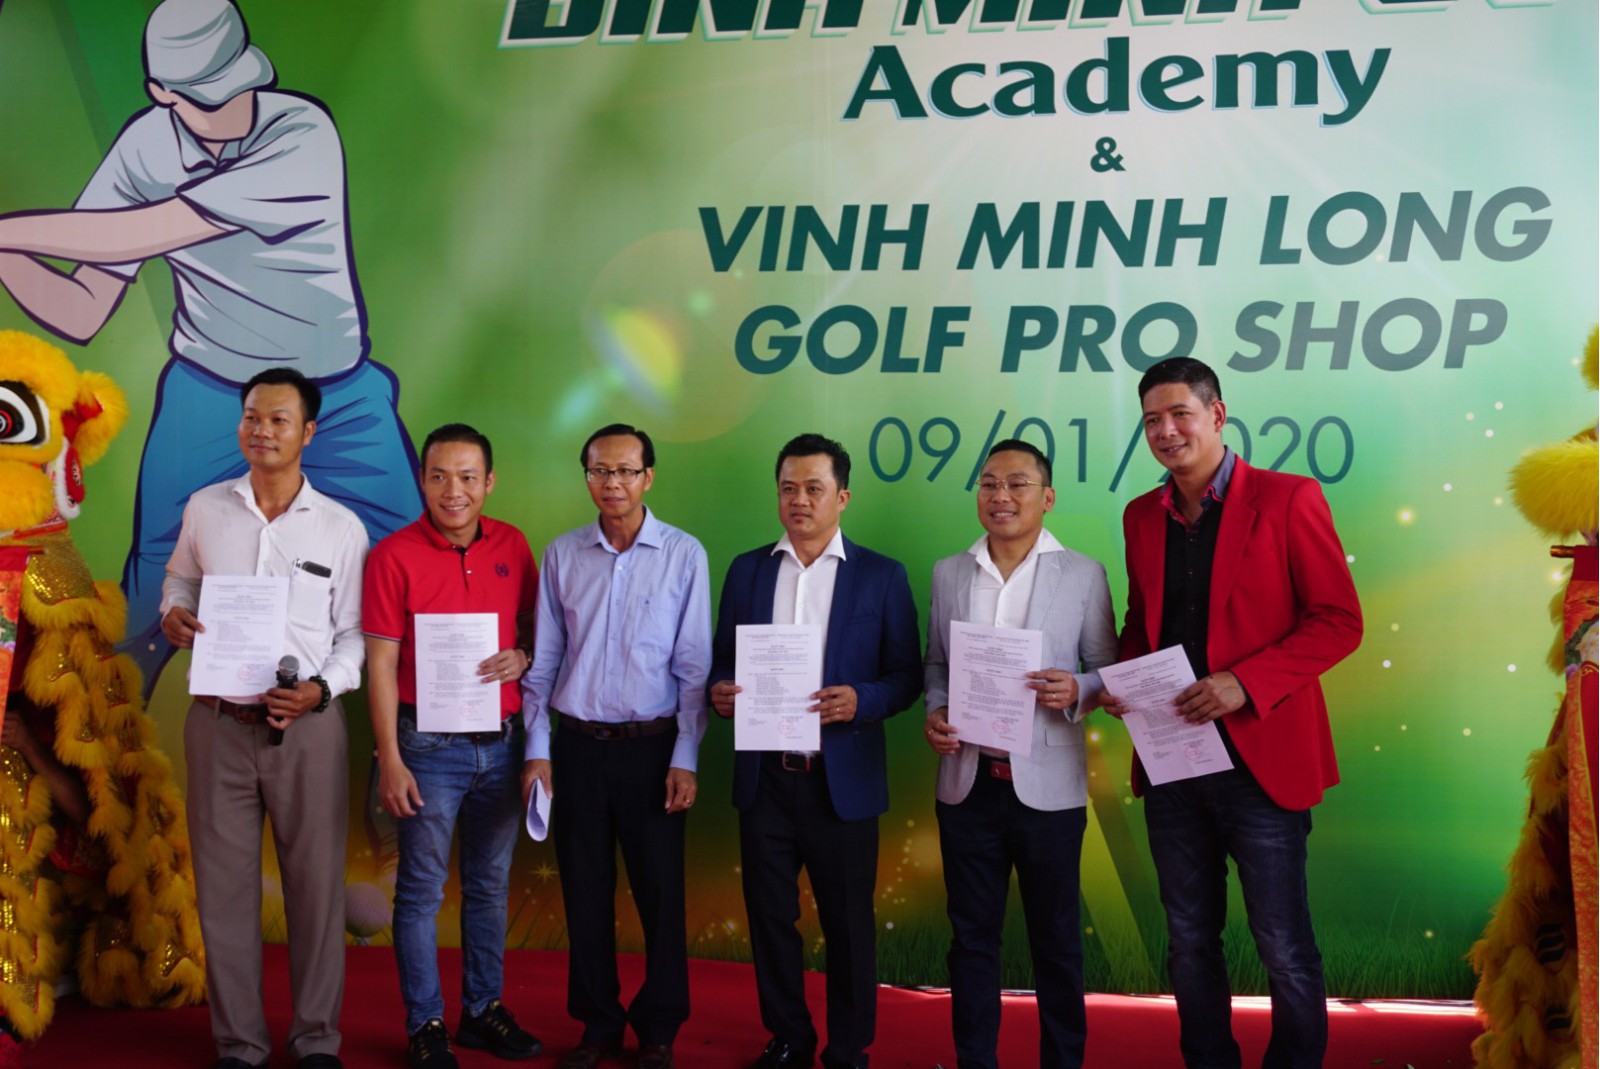  CLB “Vietnam Golf Club” nhiệm kỳ 2/2020 chính thức ra mắt các thành viên chủ chốt